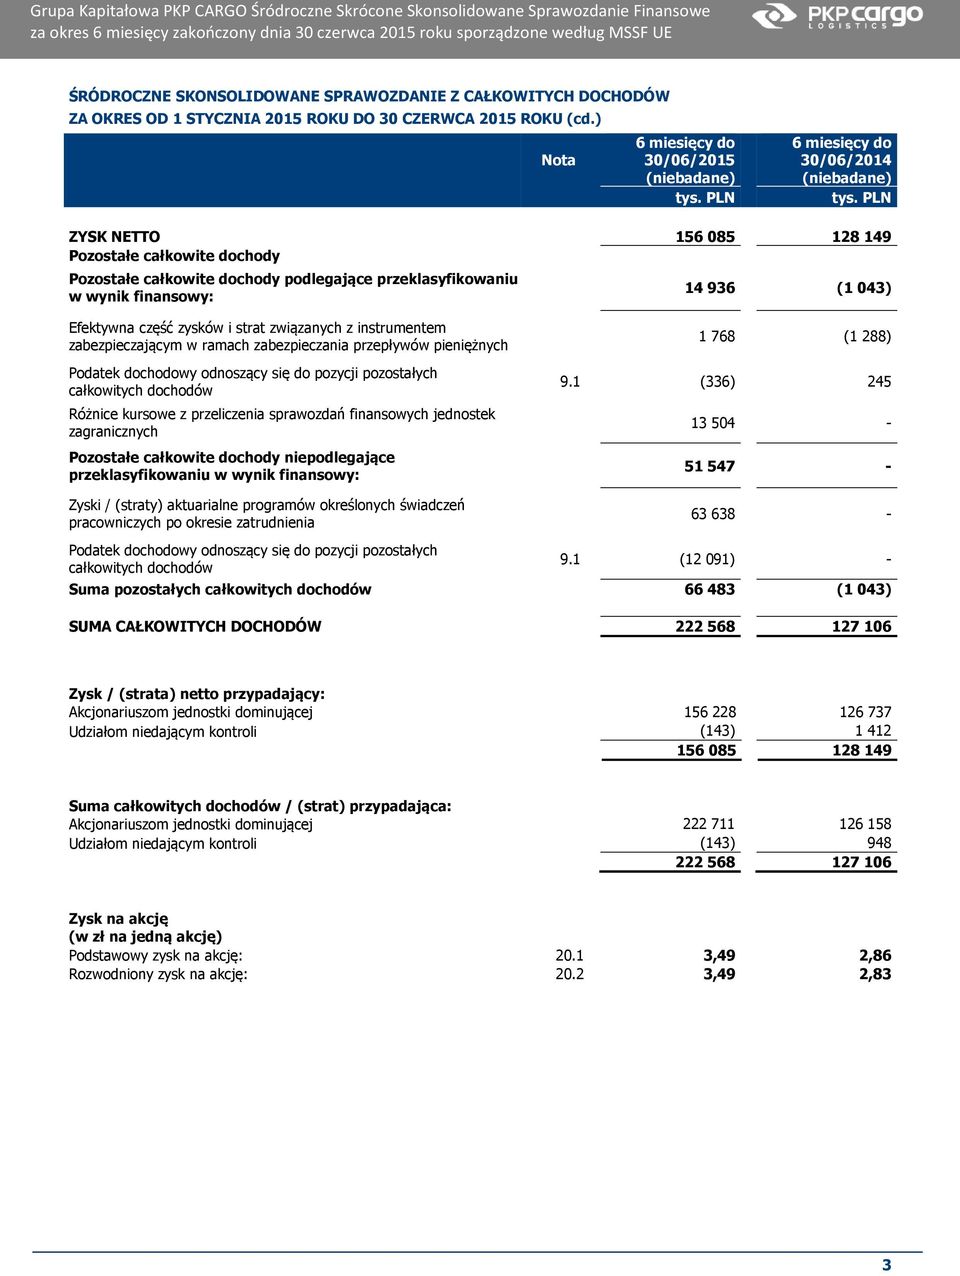 ) Nota 30/06/2014 ZYSK NETTO 156 085 128 149 Pozostałe całkowite dochody Pozostałe całkowite dochody podlegające przeklasyfikowaniu w wynik finansowy: 14 936 (1 043) Efektywna część zysków i strat